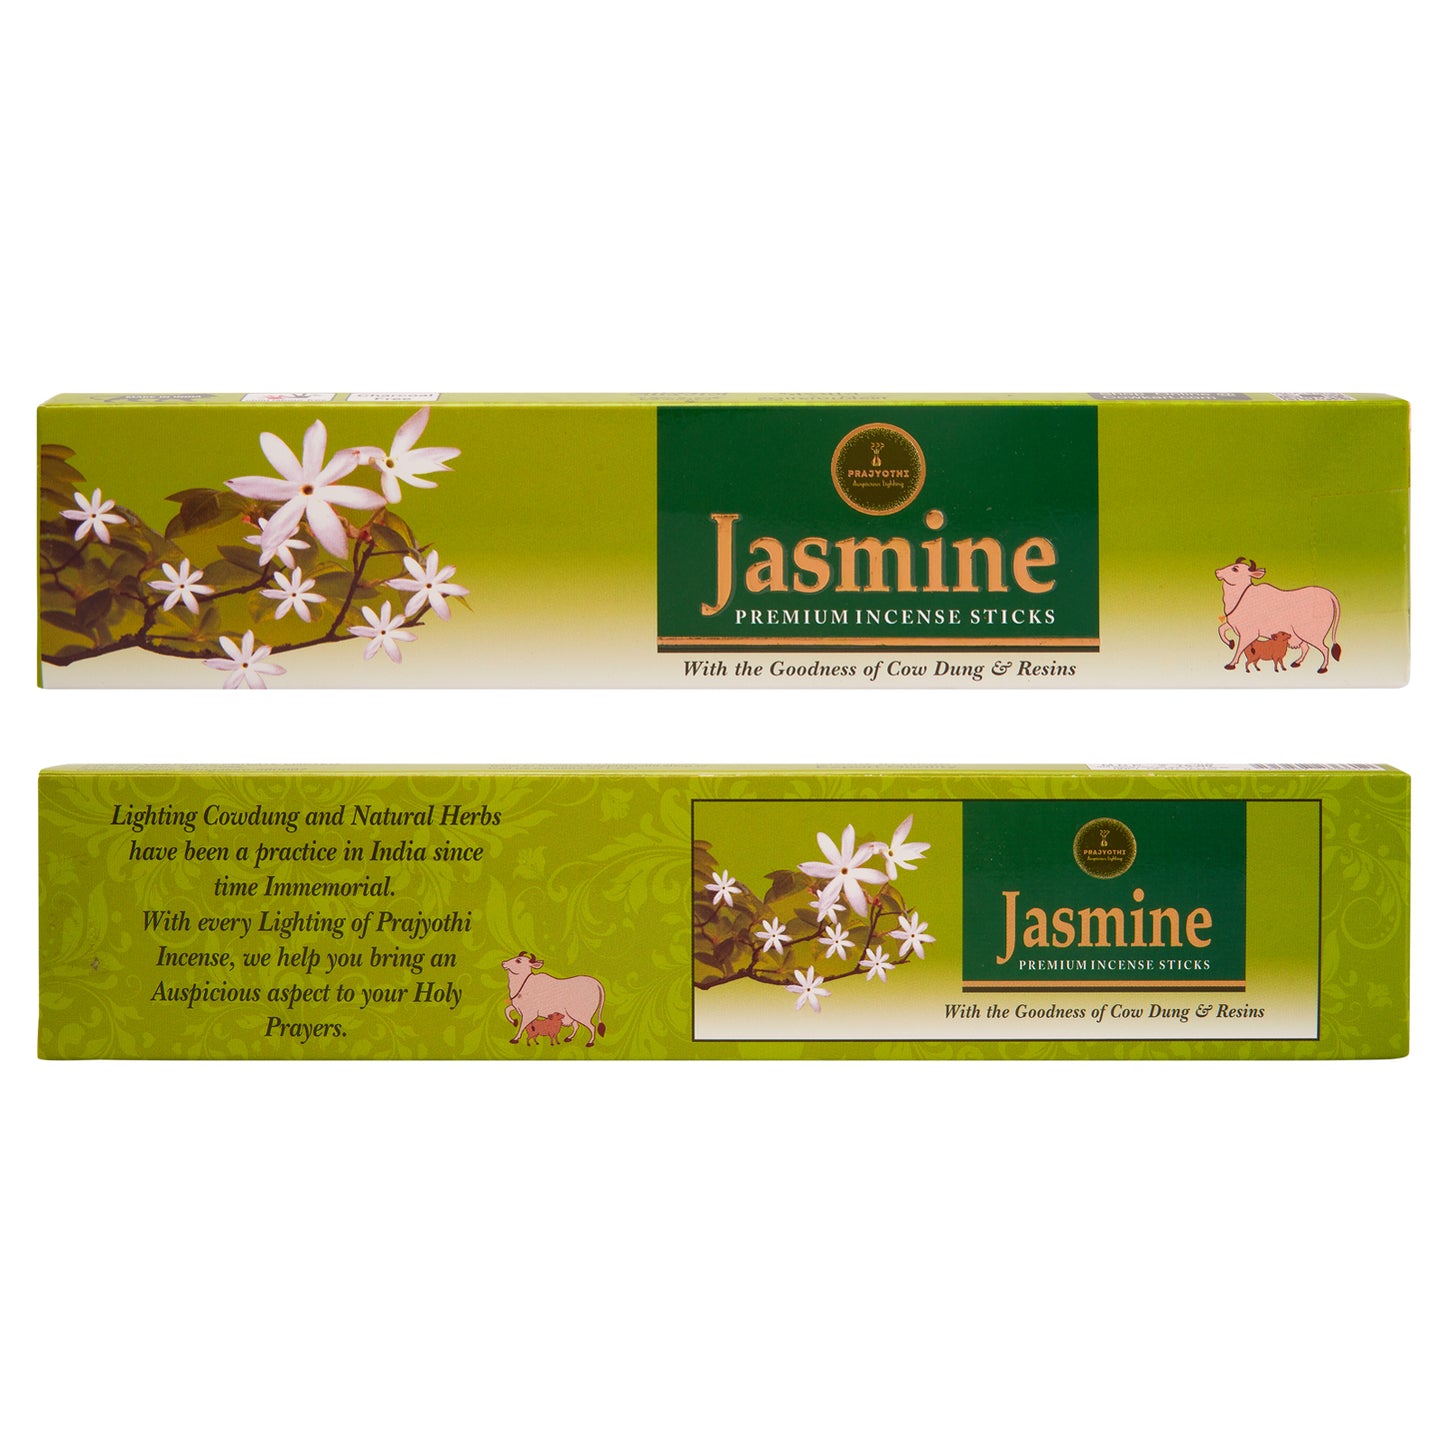 Jasmine - Incense sticks by PraJyothi